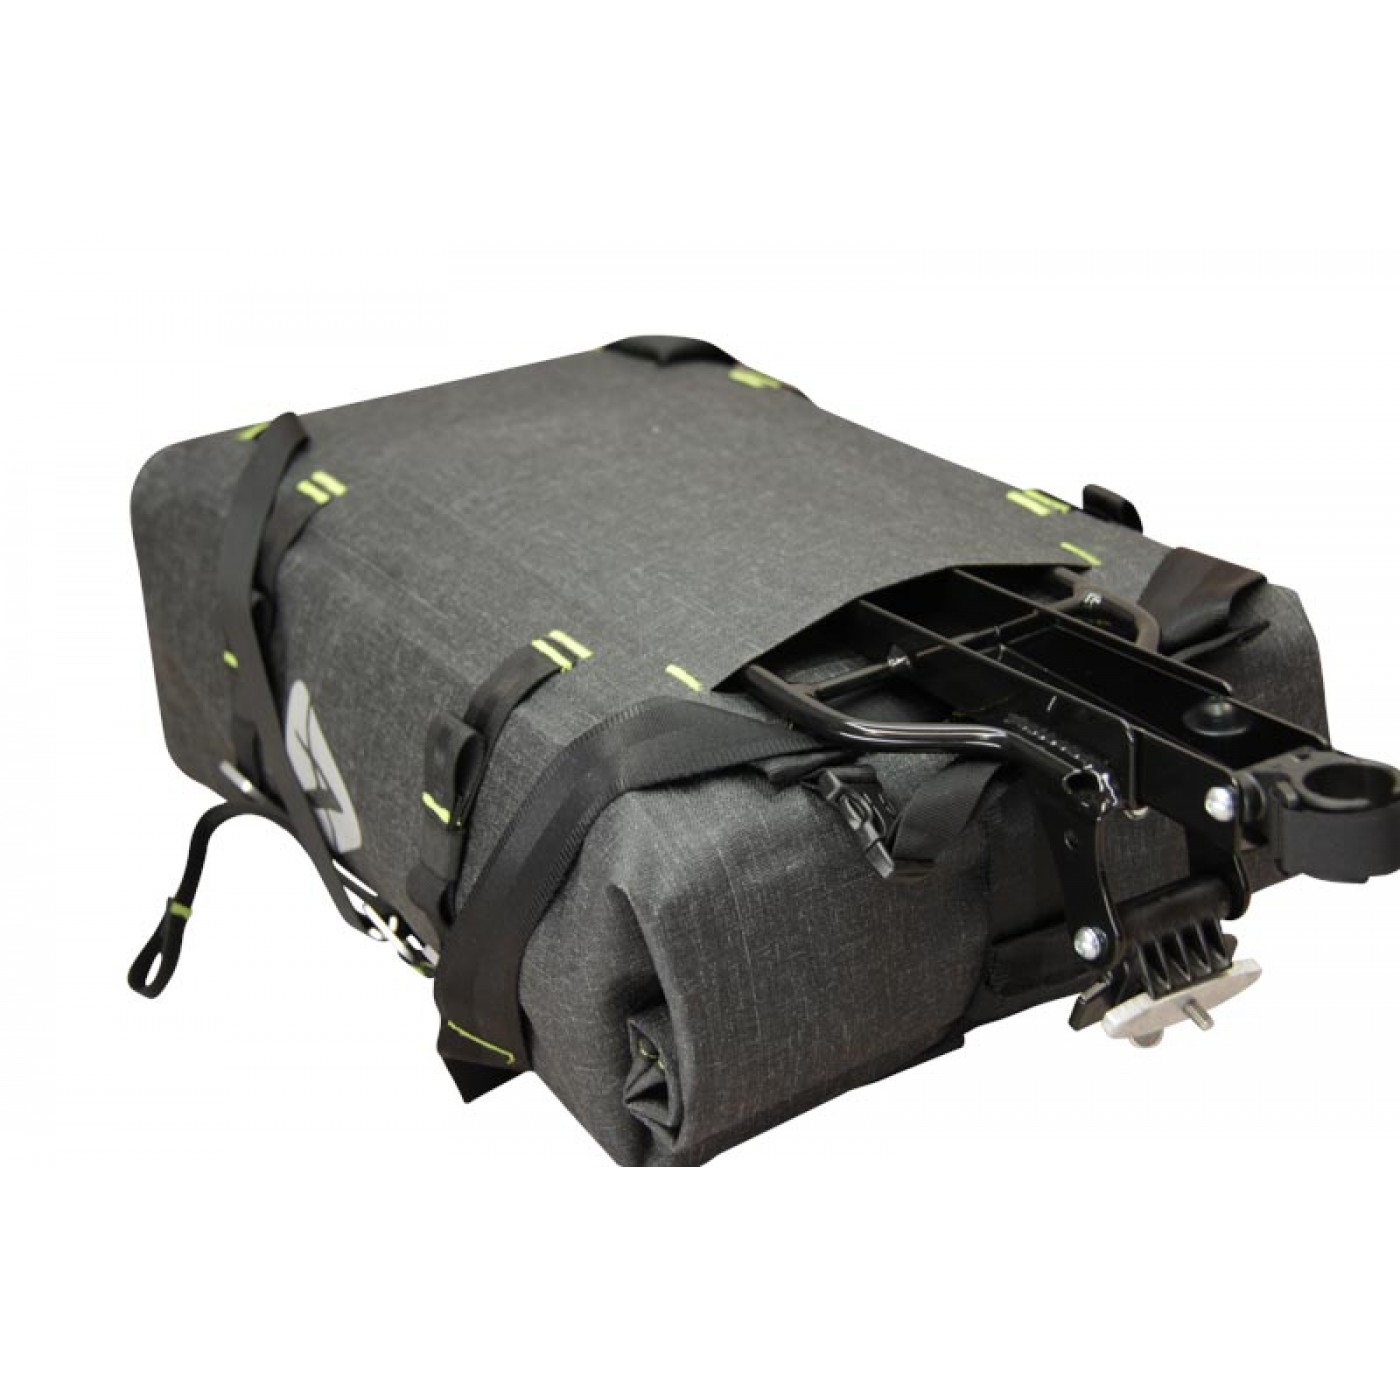 arkel backpack